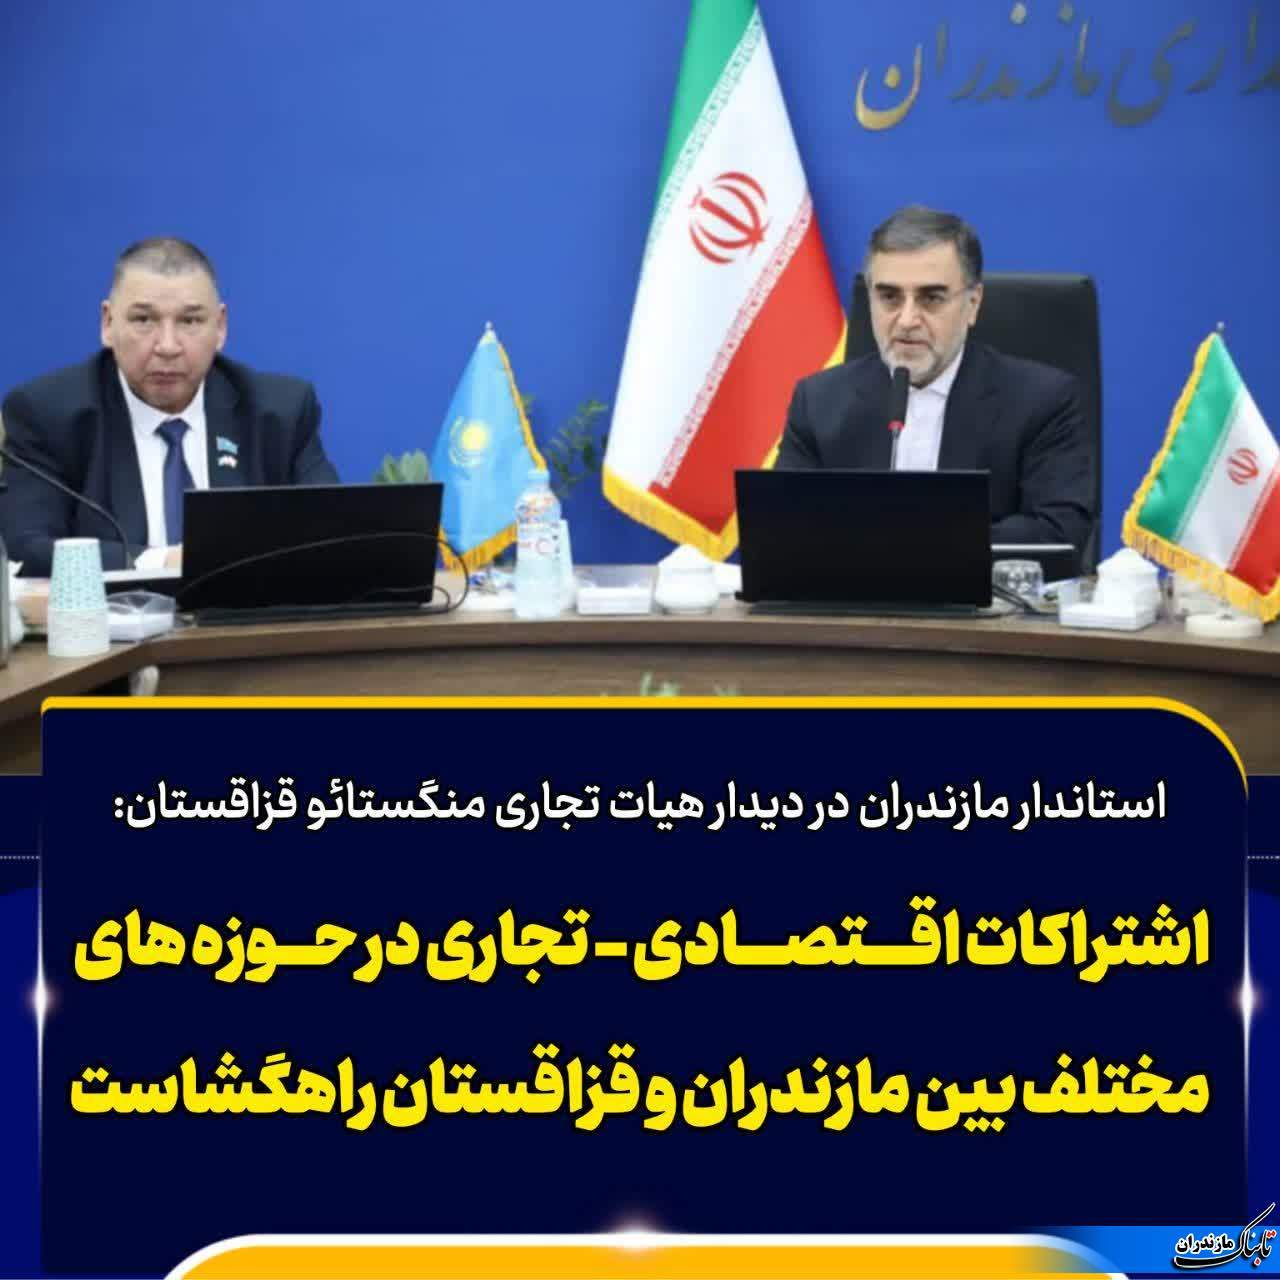 استاندار مازندران: گسترش روابط سیاسی، اجتماعی، اقتصادی و فرهنگی ایران با کشورهای همسایه